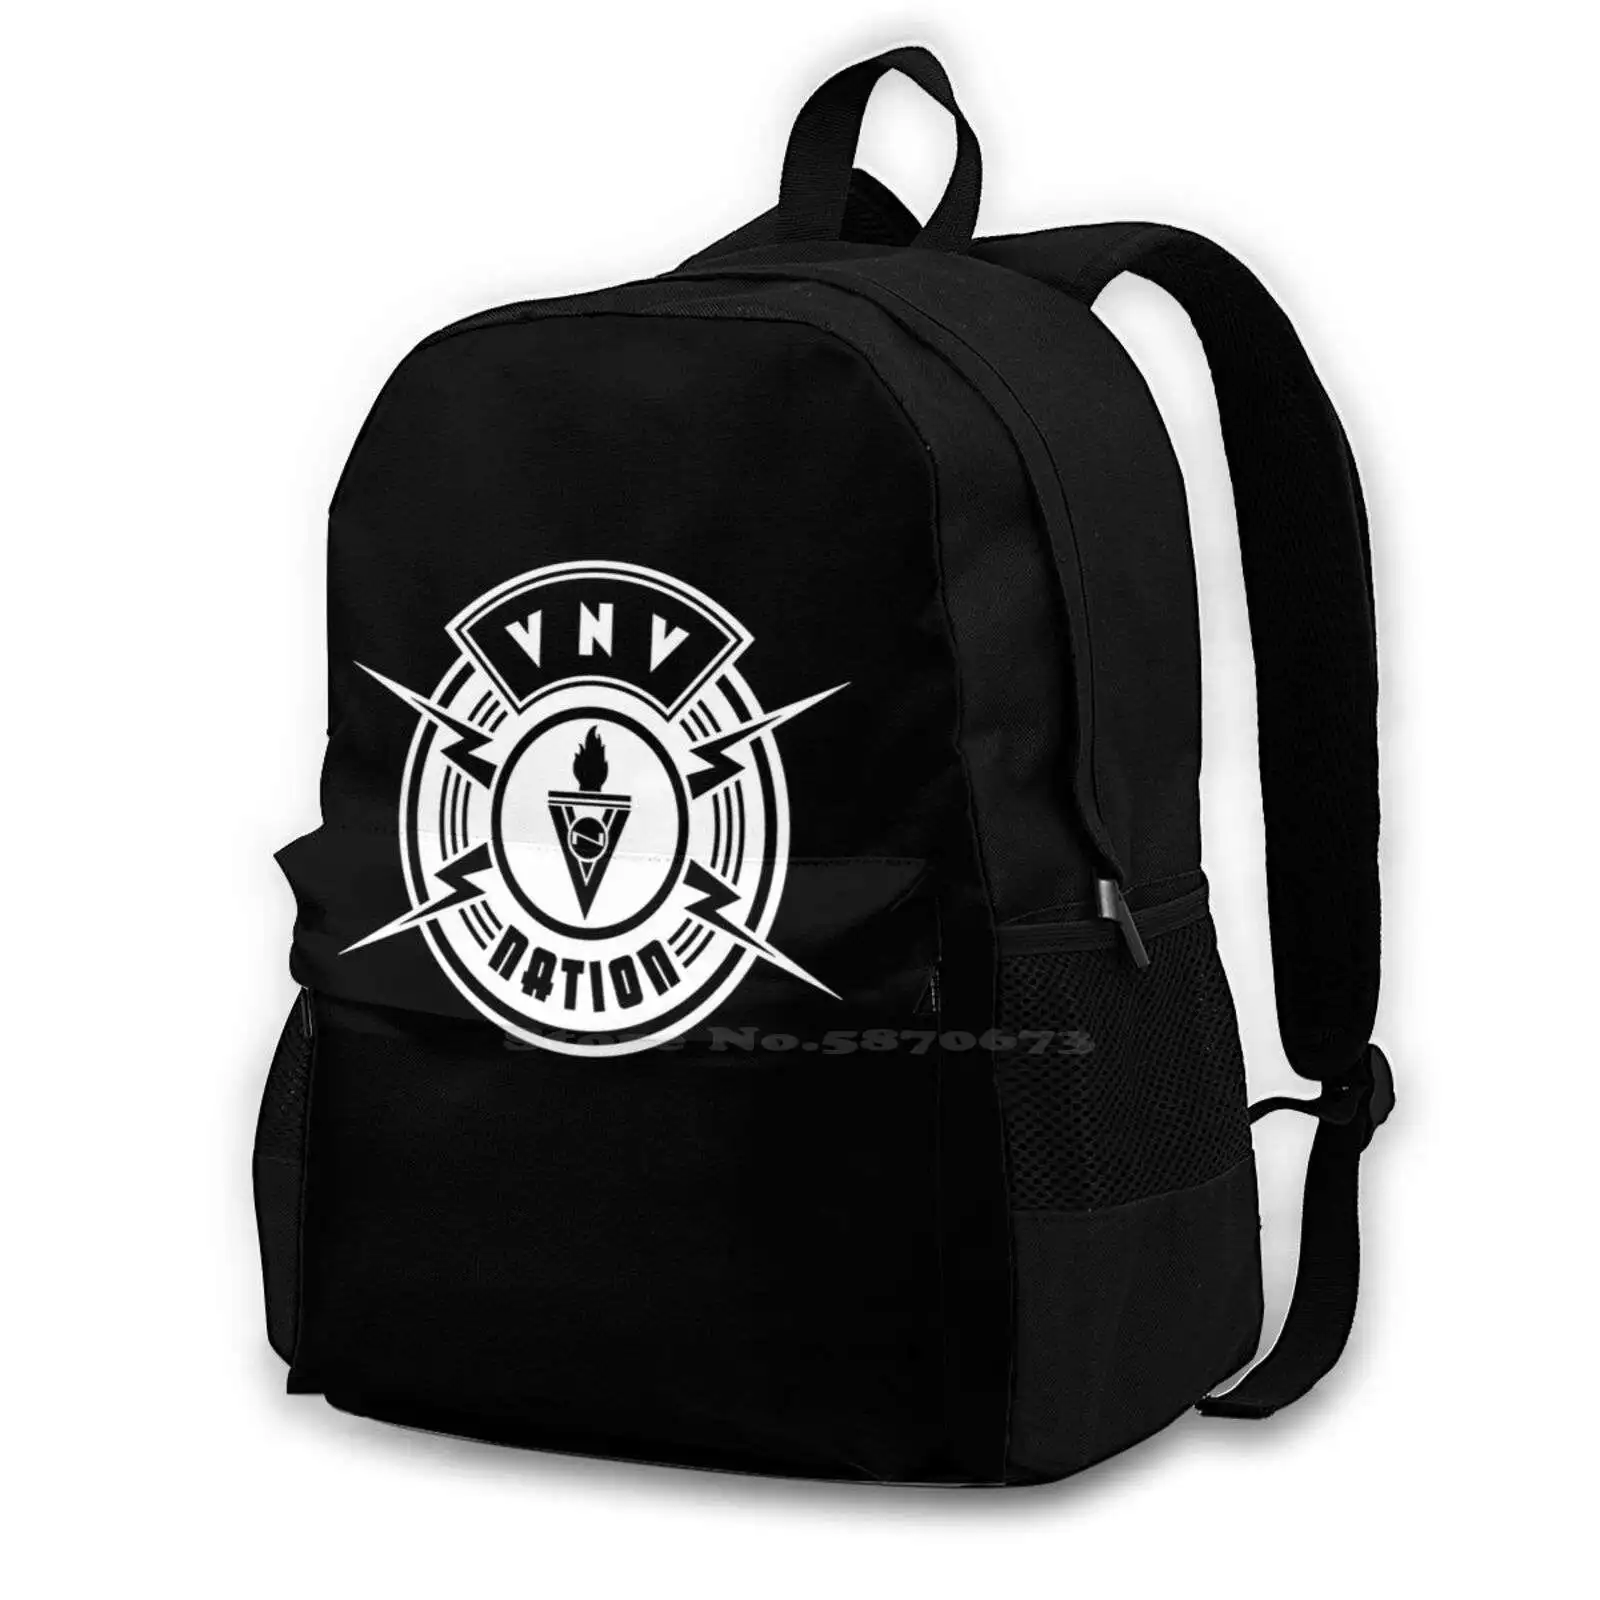 

Patch Of Vnv Nation Essential Backpacks For Men Women Teenagers Girls Bags Vnv Nation Vnv Black Patch Cool Black Flag Trending